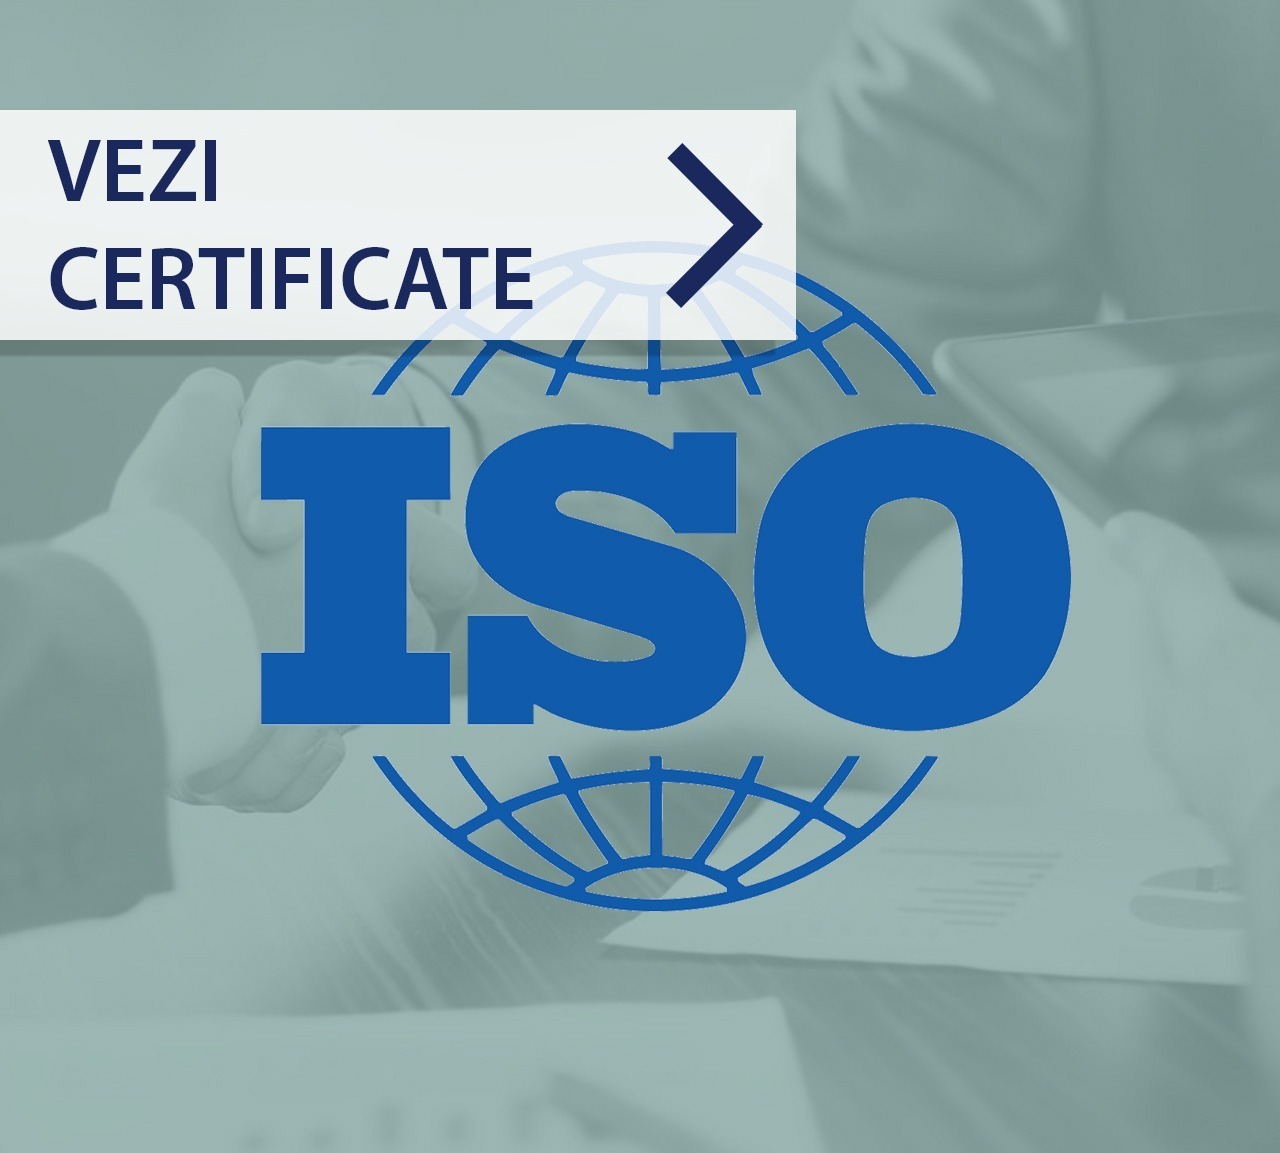 Ce anume este certificat de ISO si de ce conteaza ISO?